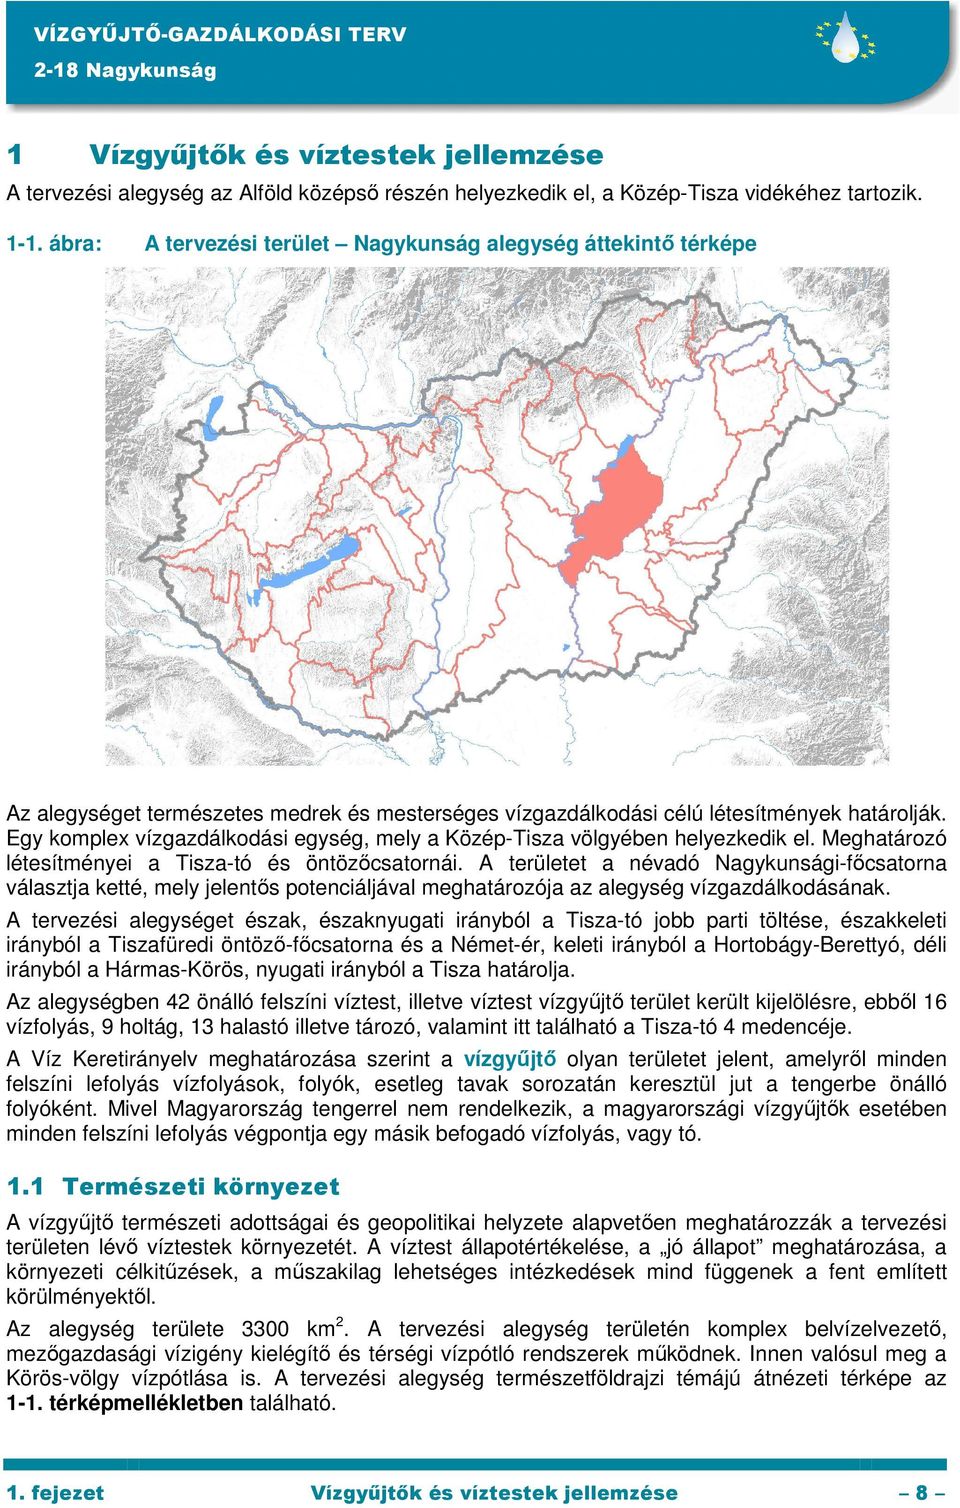 Egy komplex vízgazdálkodási egység, mely a Közép-Tisza völgyében helyezkedik el. Meghatározó létesítményei a Tisza-tó és öntözőcsatornái.